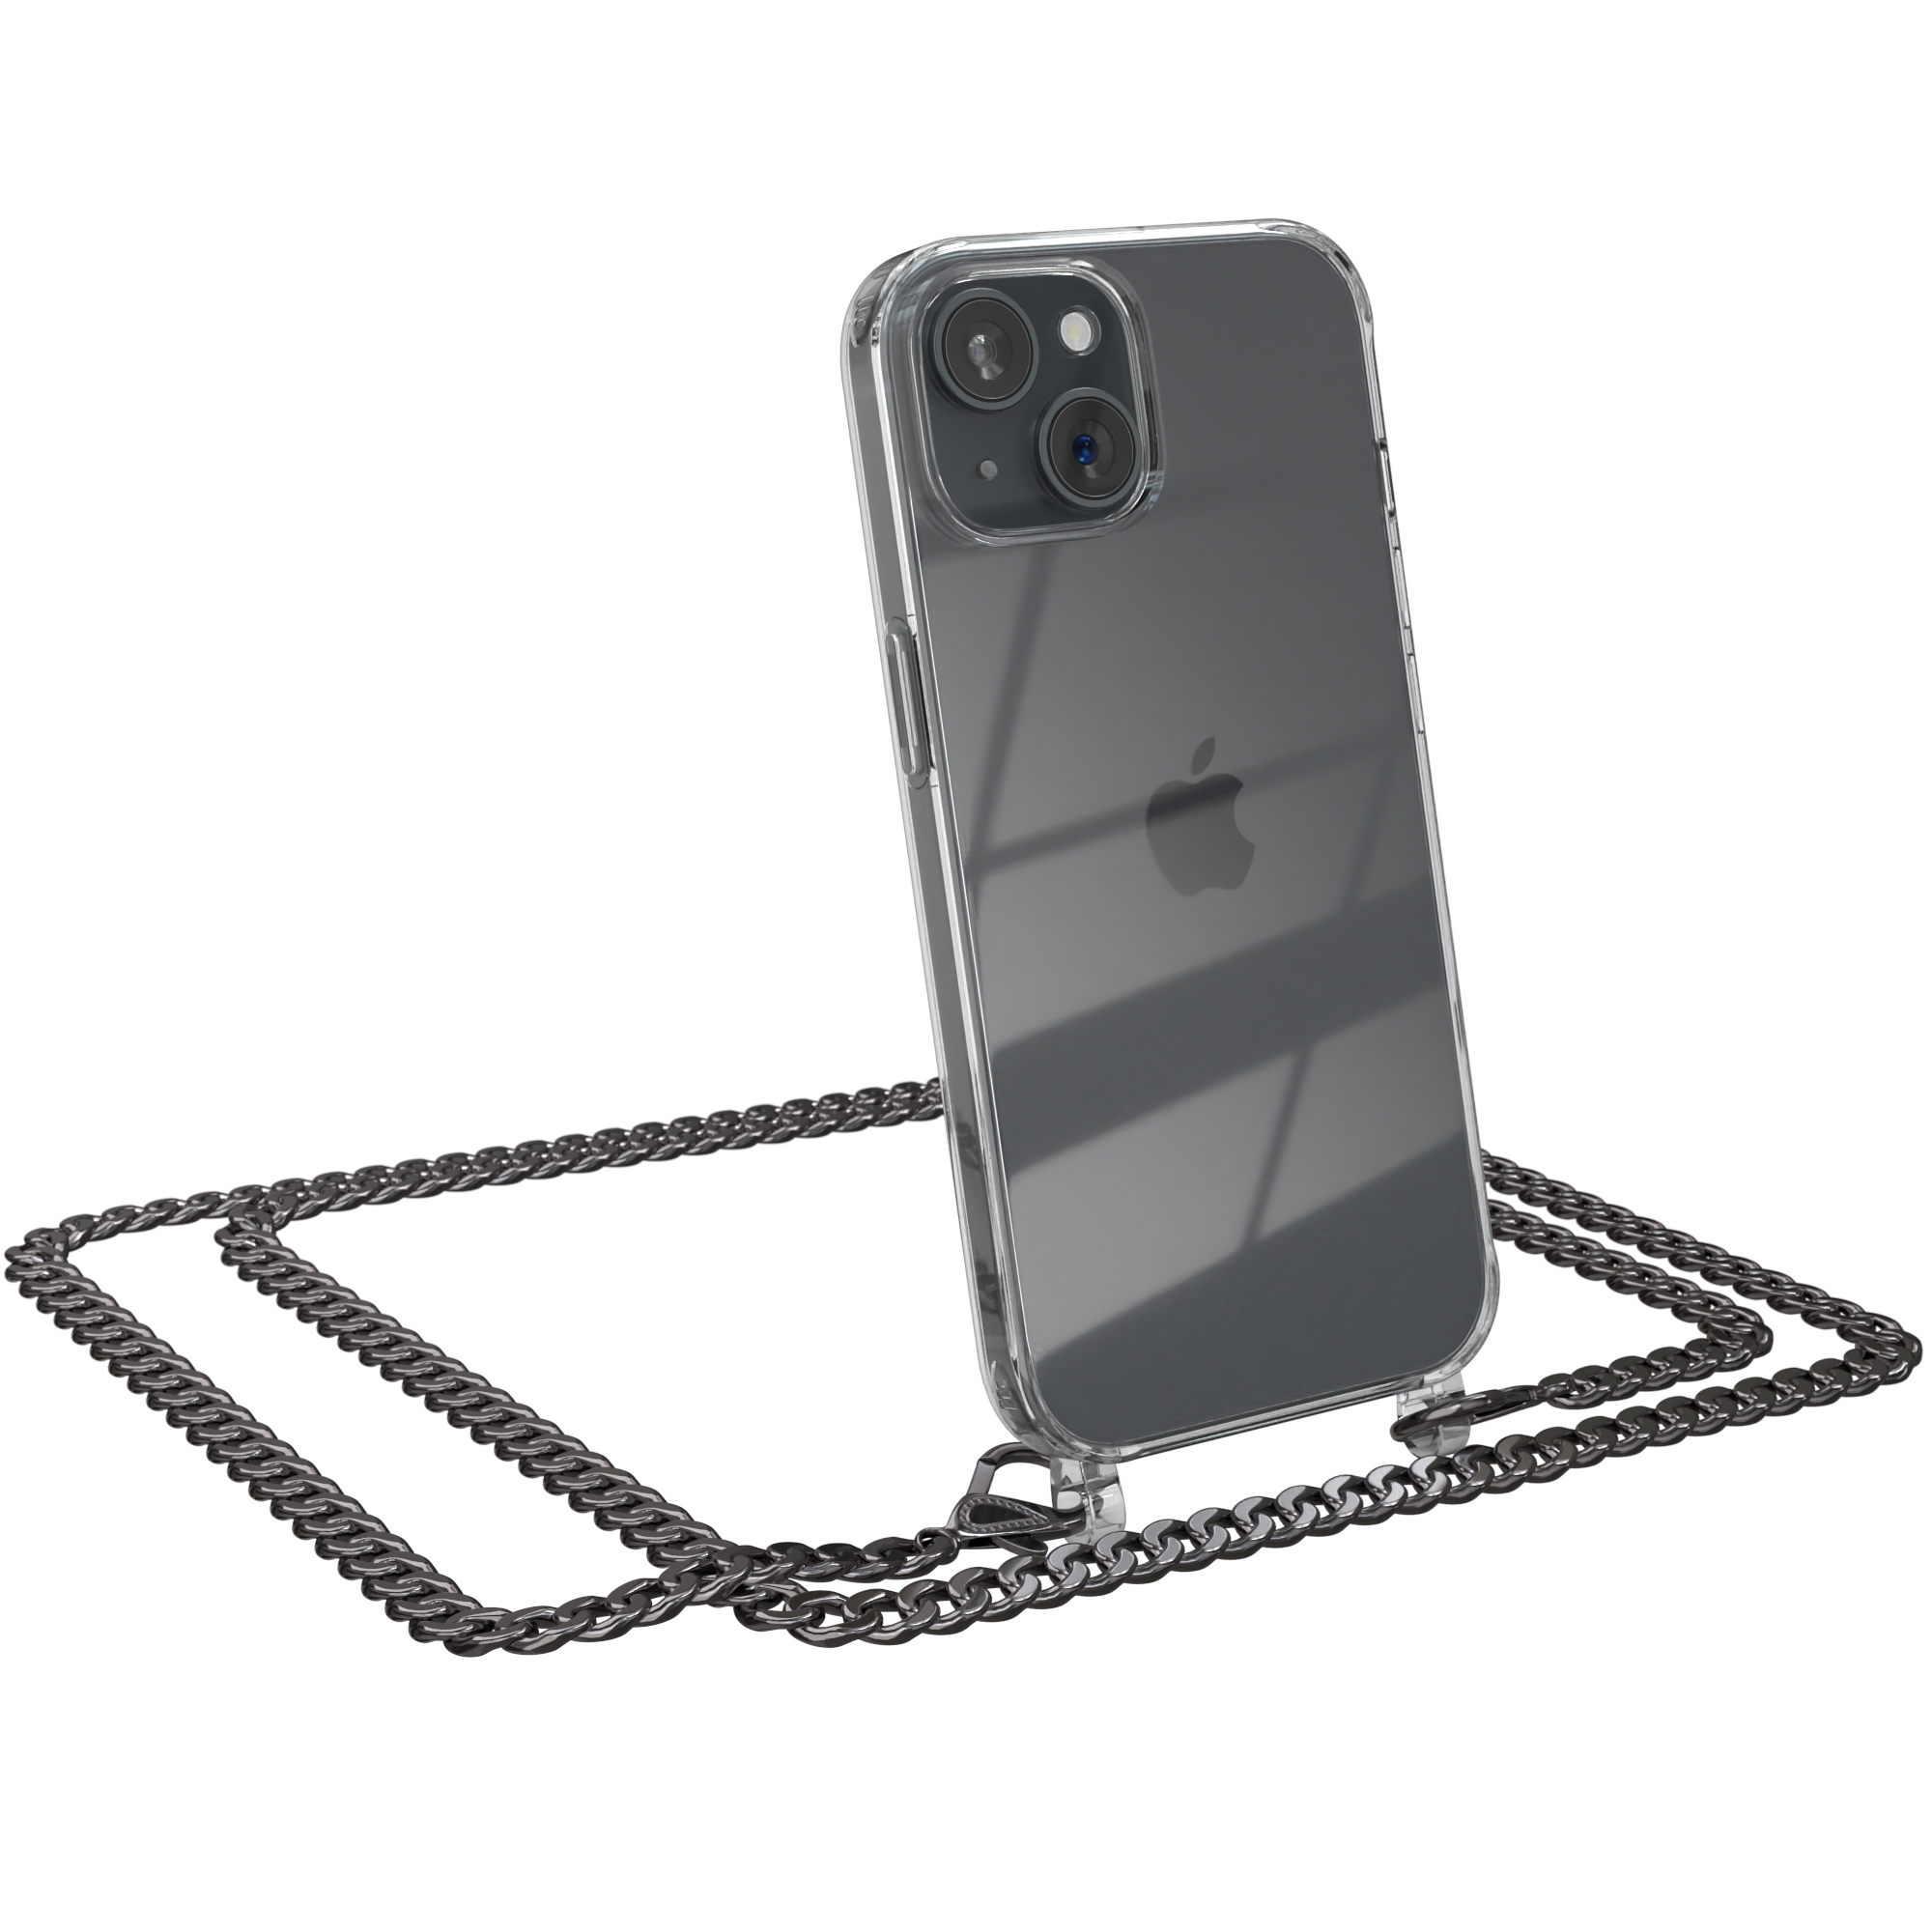 EAZY CASE Handykette Metall Grau Apple, Schwarz, + extra Kordel Anthrazit 15, iPhone Umhängetasche